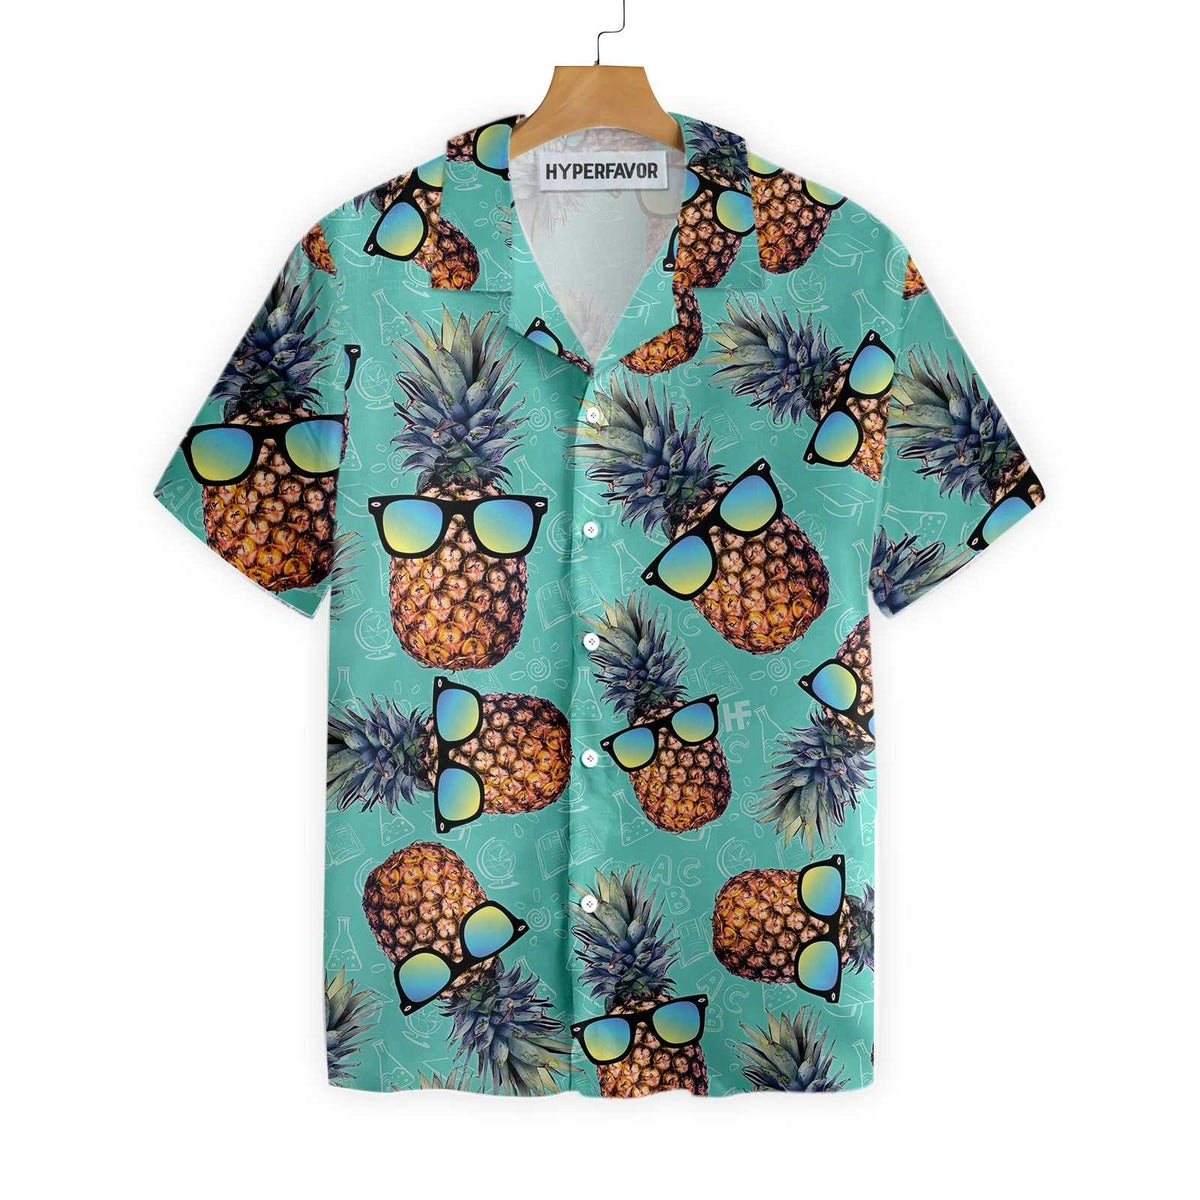 Chill Pineapple Teacher Hawaiian Shirt Teacher Shirt for Men And Women Best Gift For Teachers